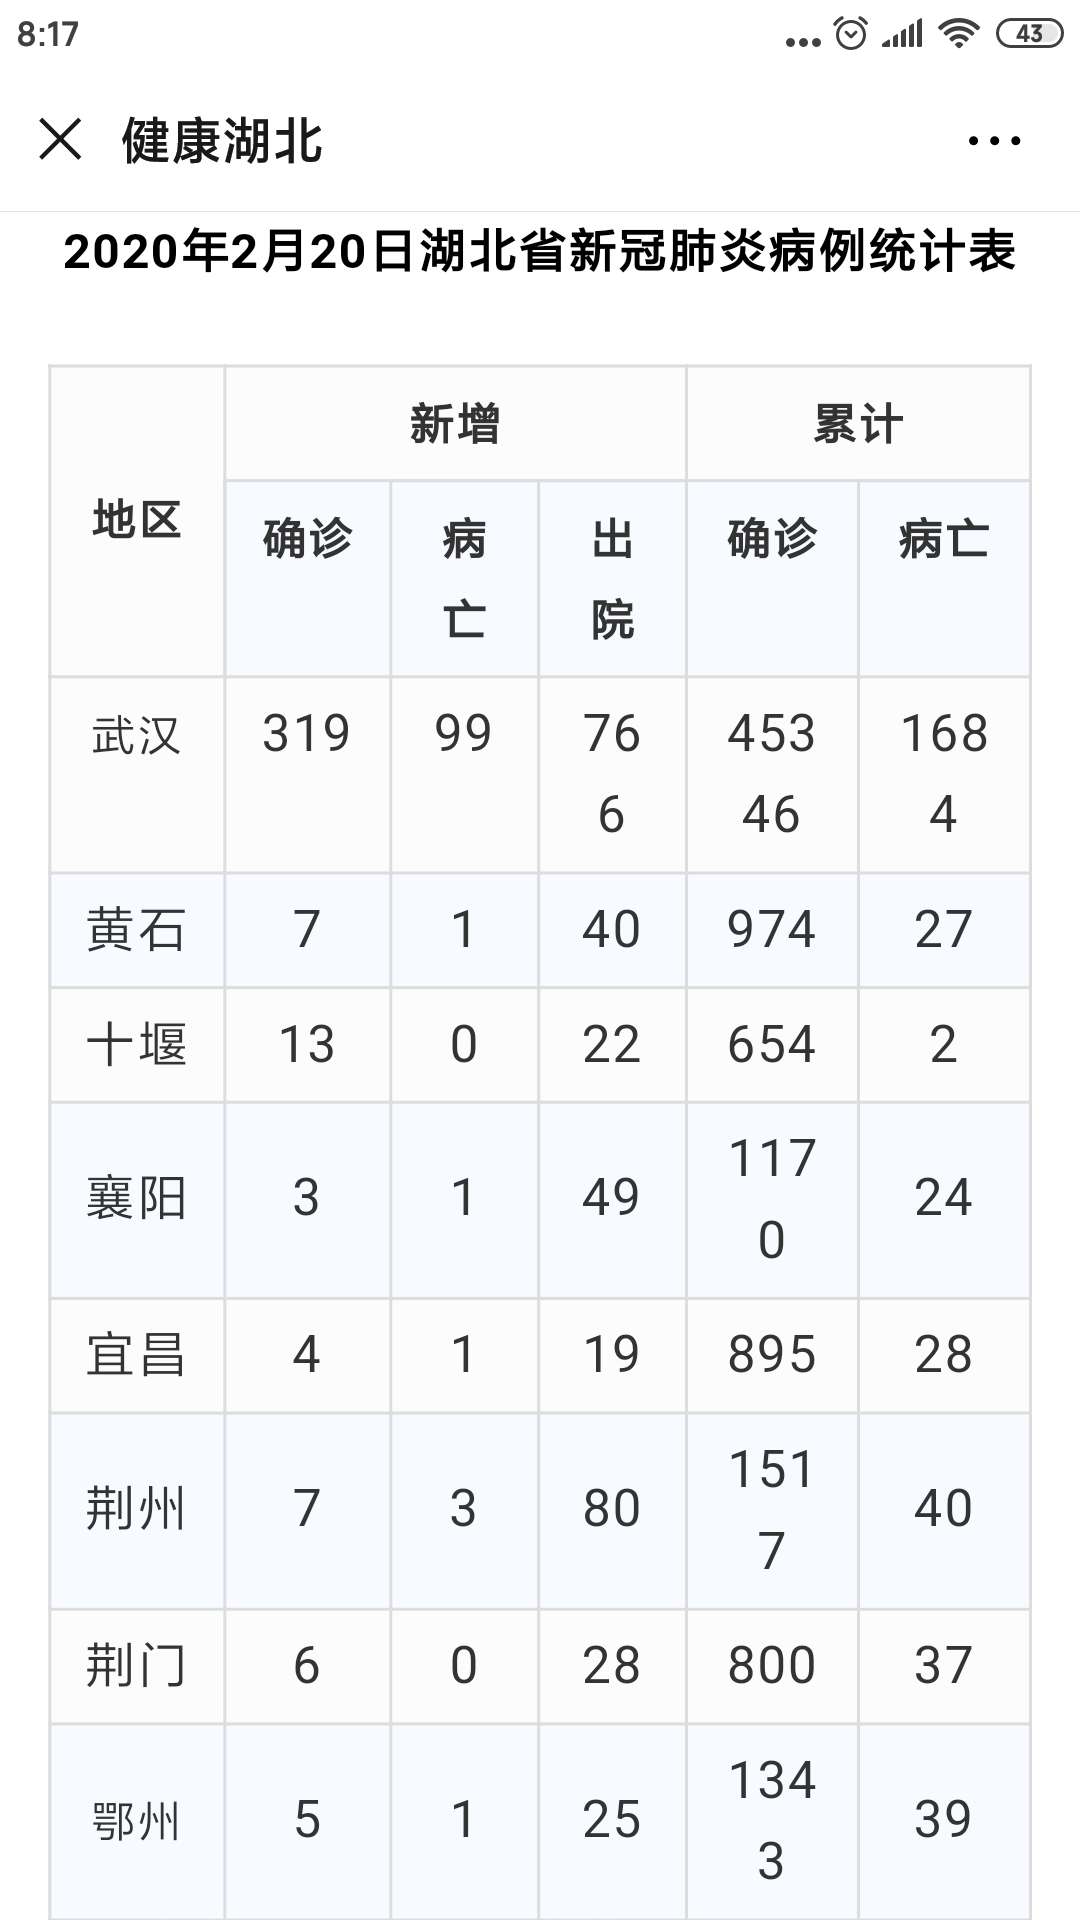 2020年2月20日湖北省新冠肺炎疫情情况(附统计表)